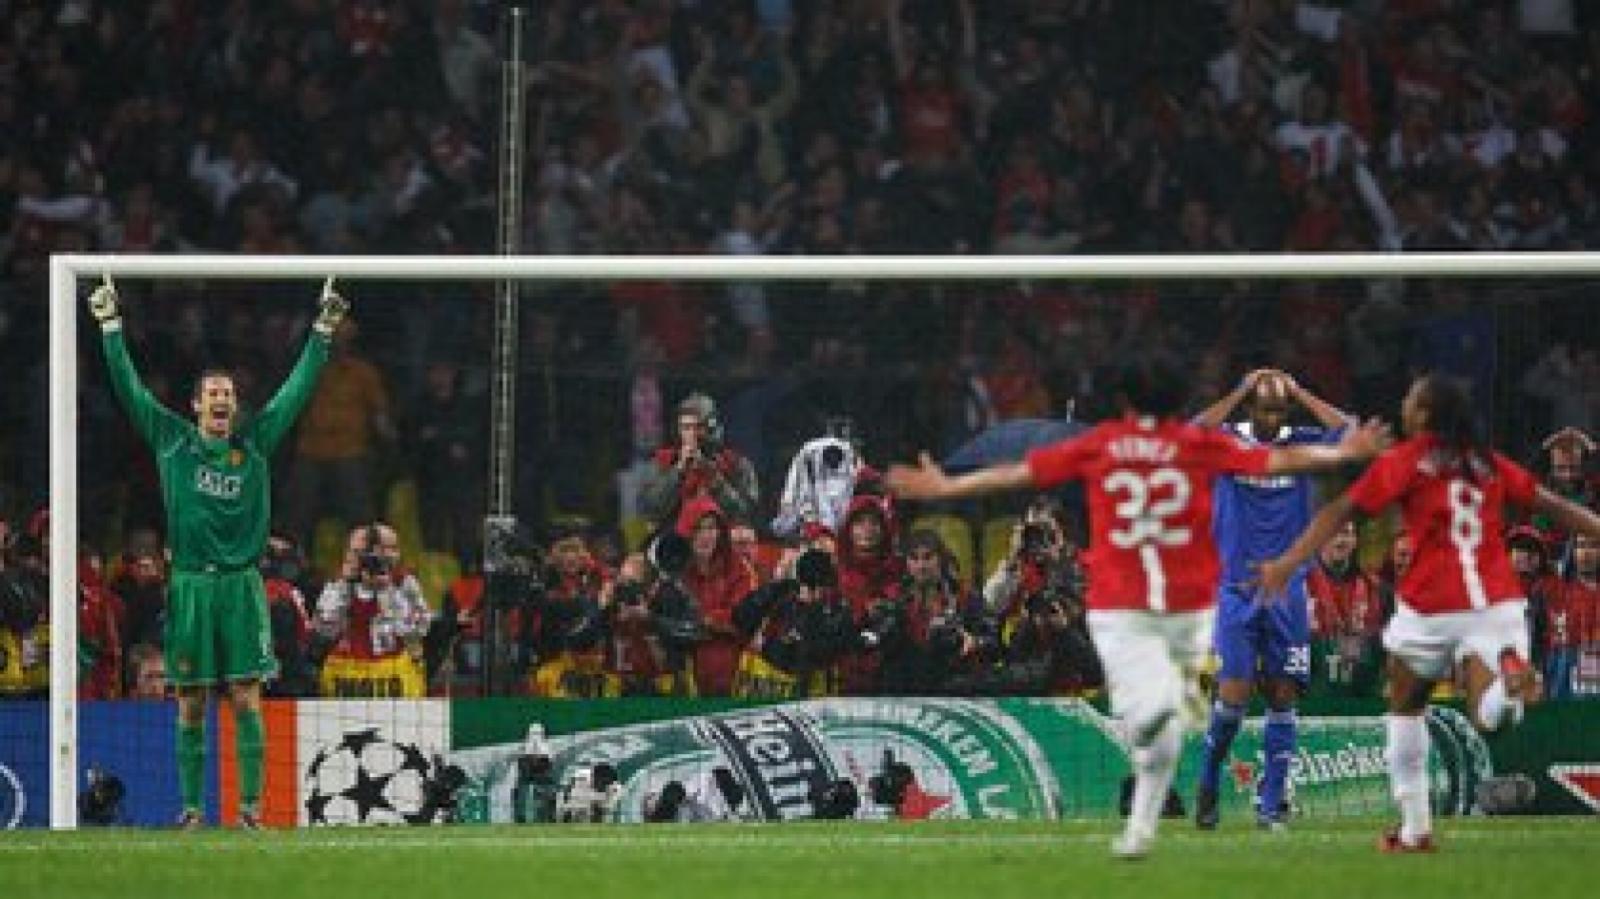 Imagen Tevez encabeza los festejos de Manchester United luego del penal fallado por Anelka